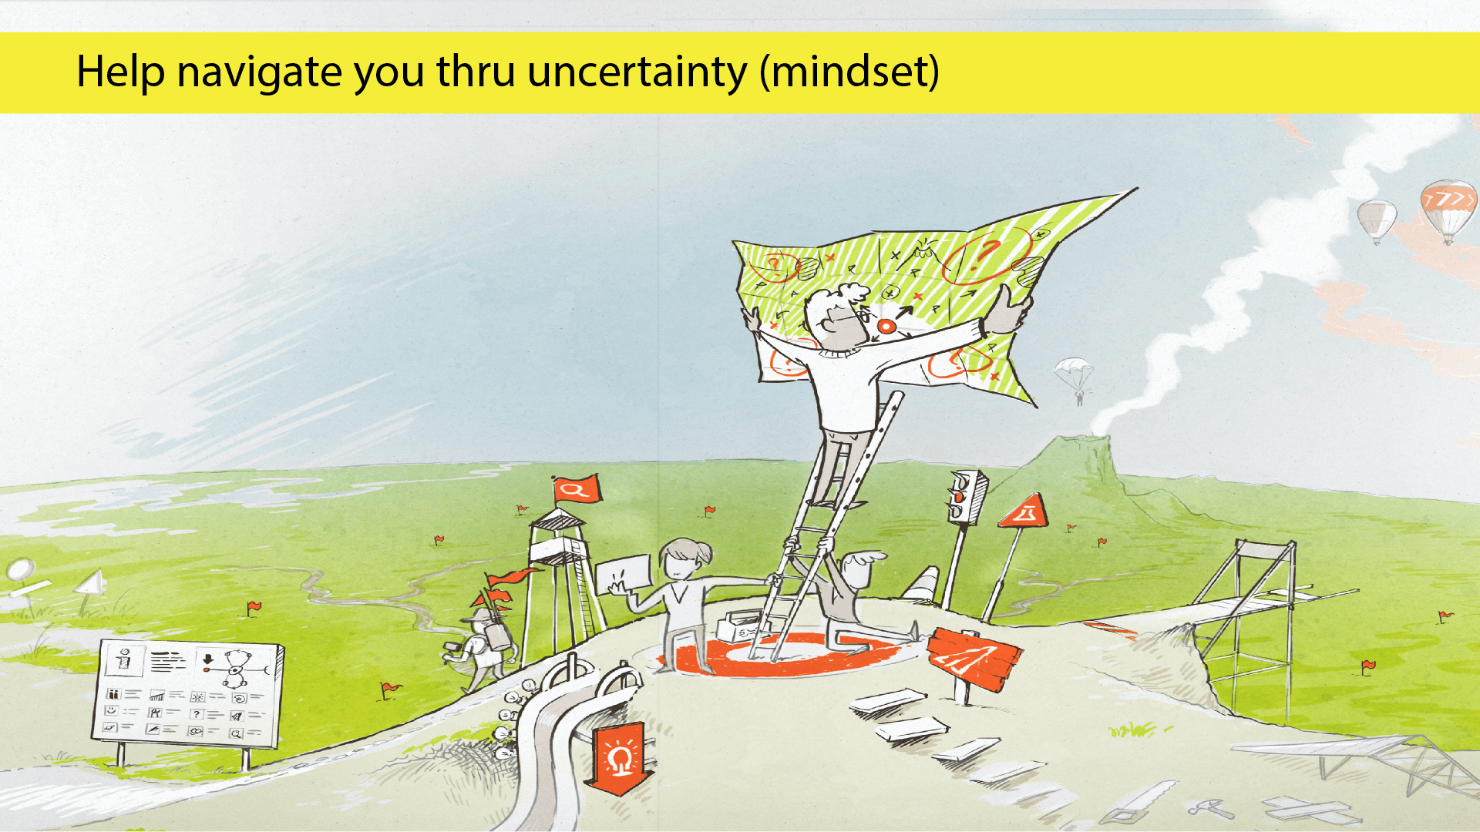 スライド画像。スライド内に「Help navigate you thru uncertainty (mindset)」というタイトル